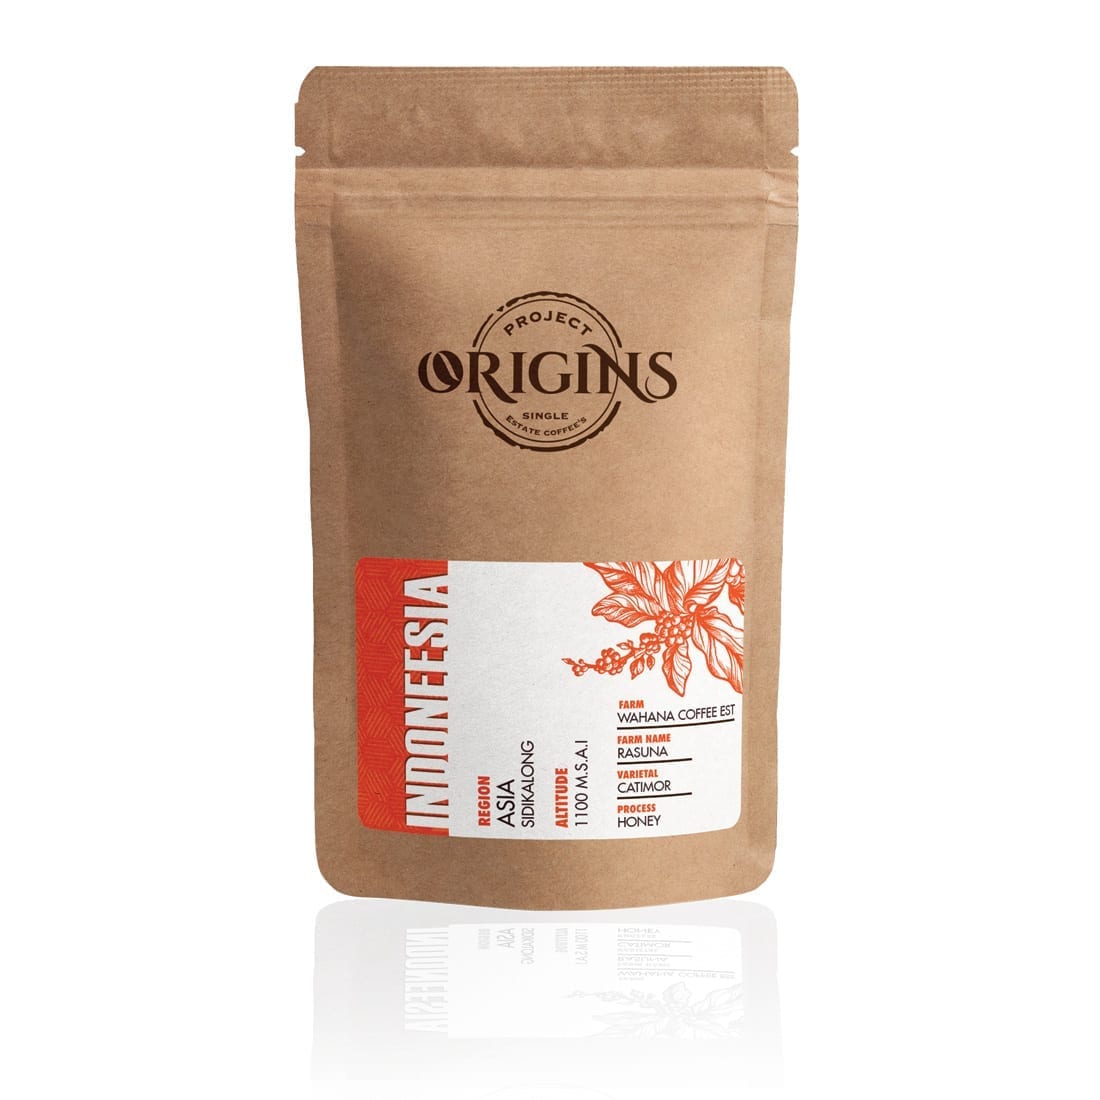 JDE Origins Coffee Packaging Design 3